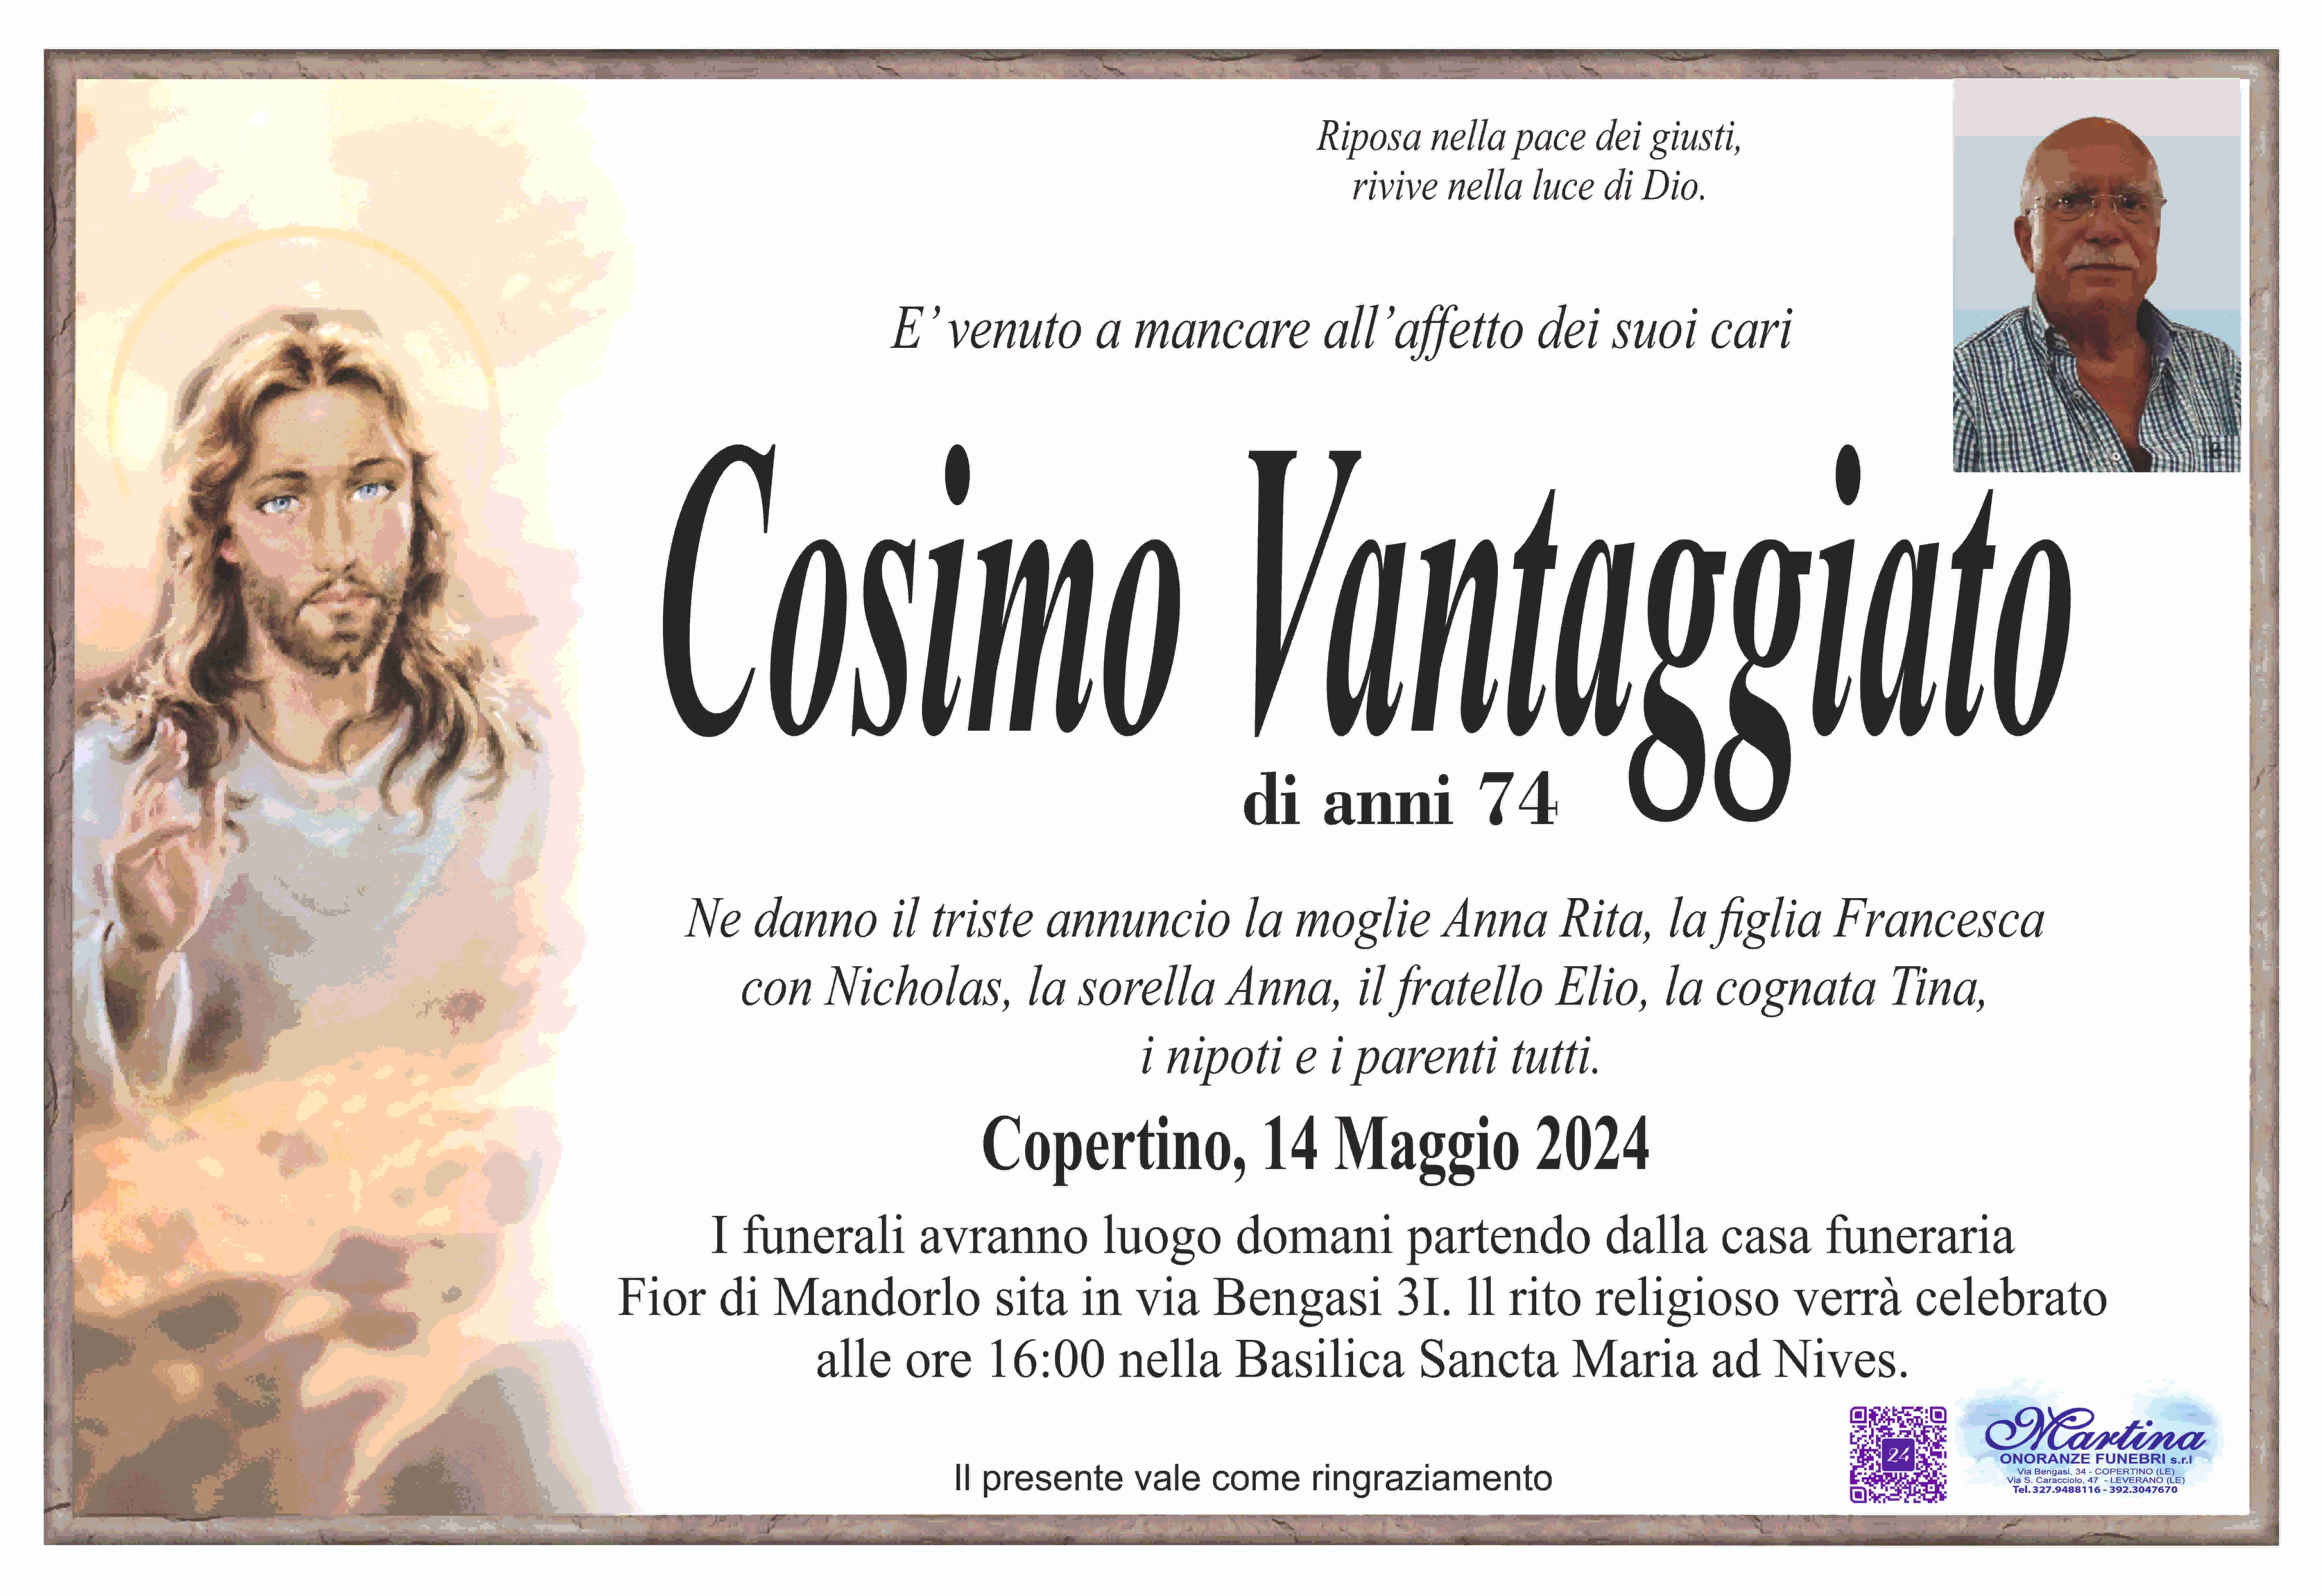 Cosimo Vantaggiato